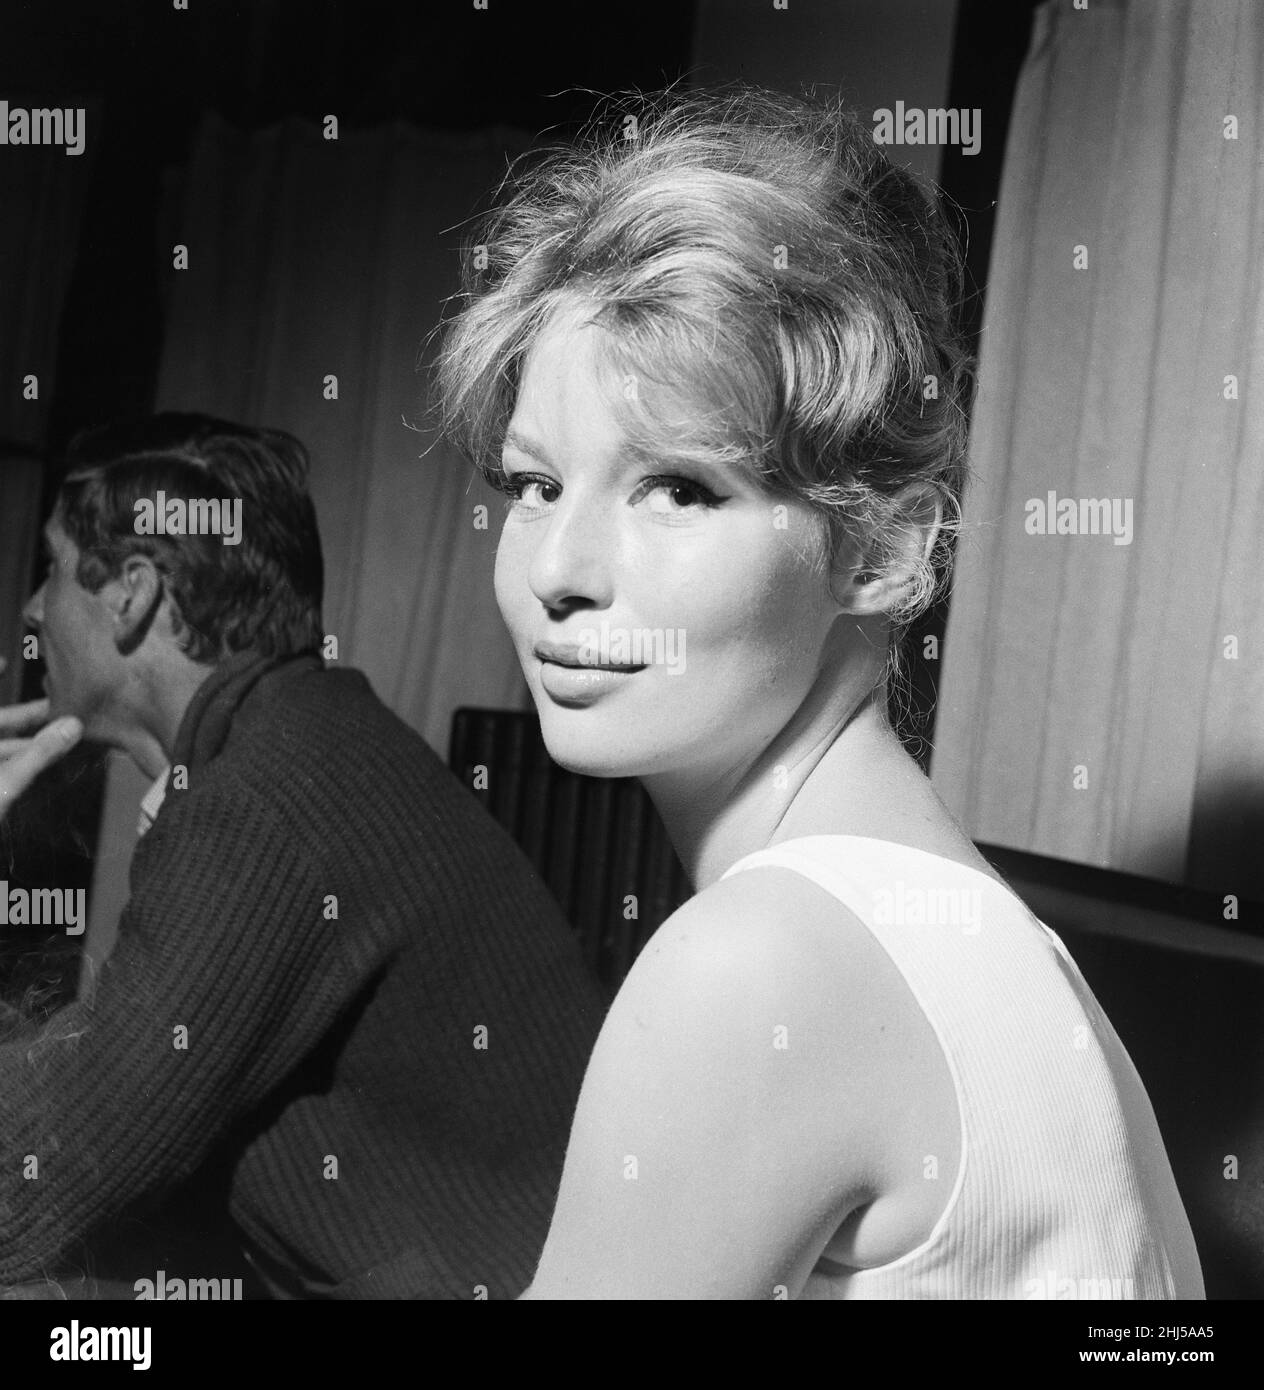 Festival de Cannes 1958. Nuestra imagen muestra ... Annette Stroyberg, actriz danesa, sábado 10th de mayo de 1958. Foto de stock